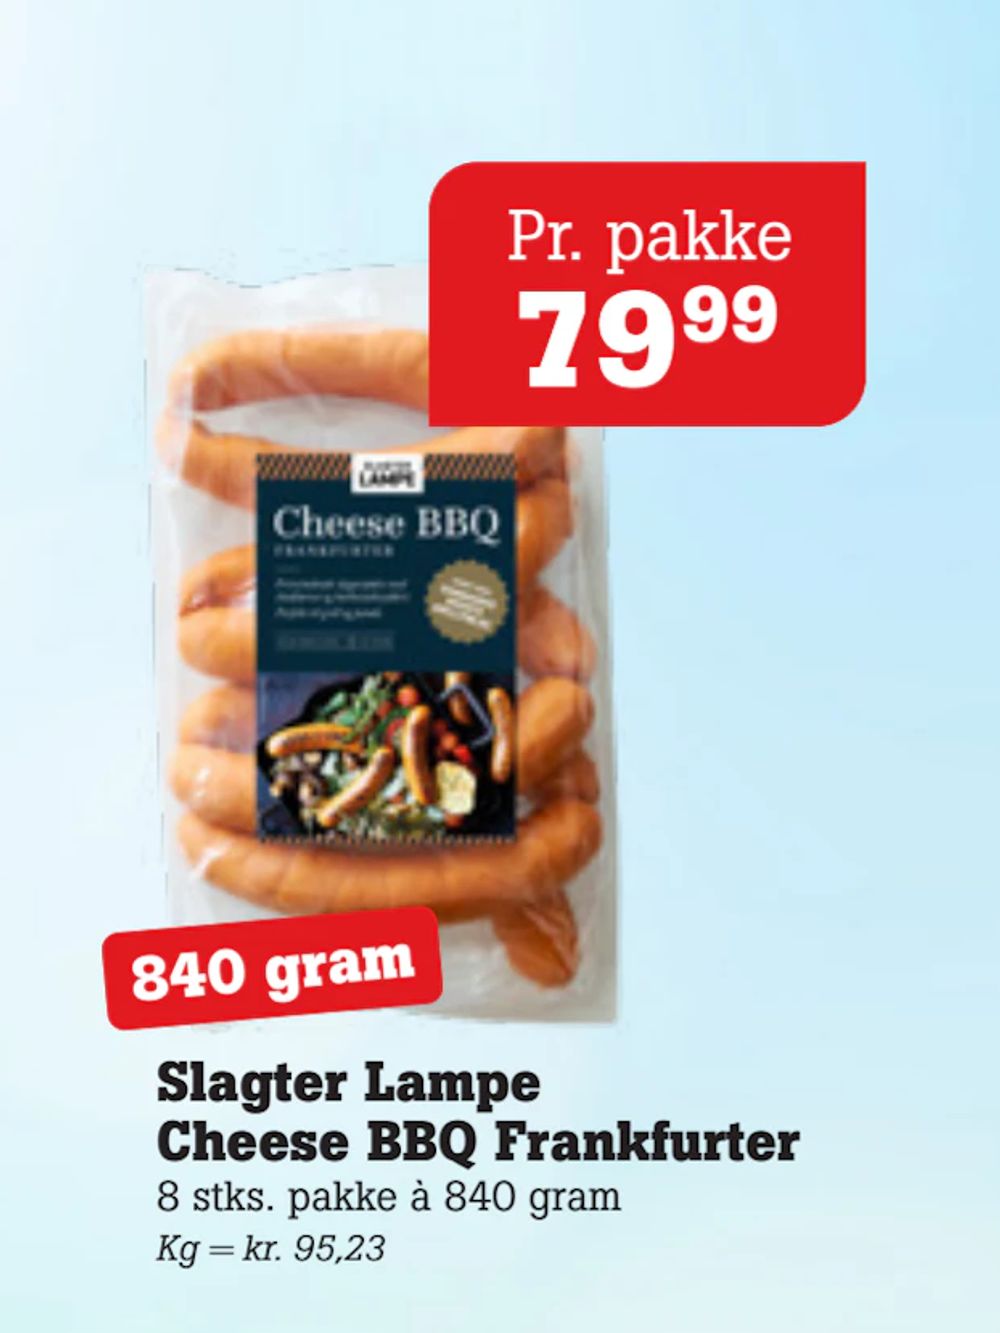 Tilbud på Slagter Lampe Cheese BBQ Frankfurter fra Poetzsch Padborg til 79,99 kr.